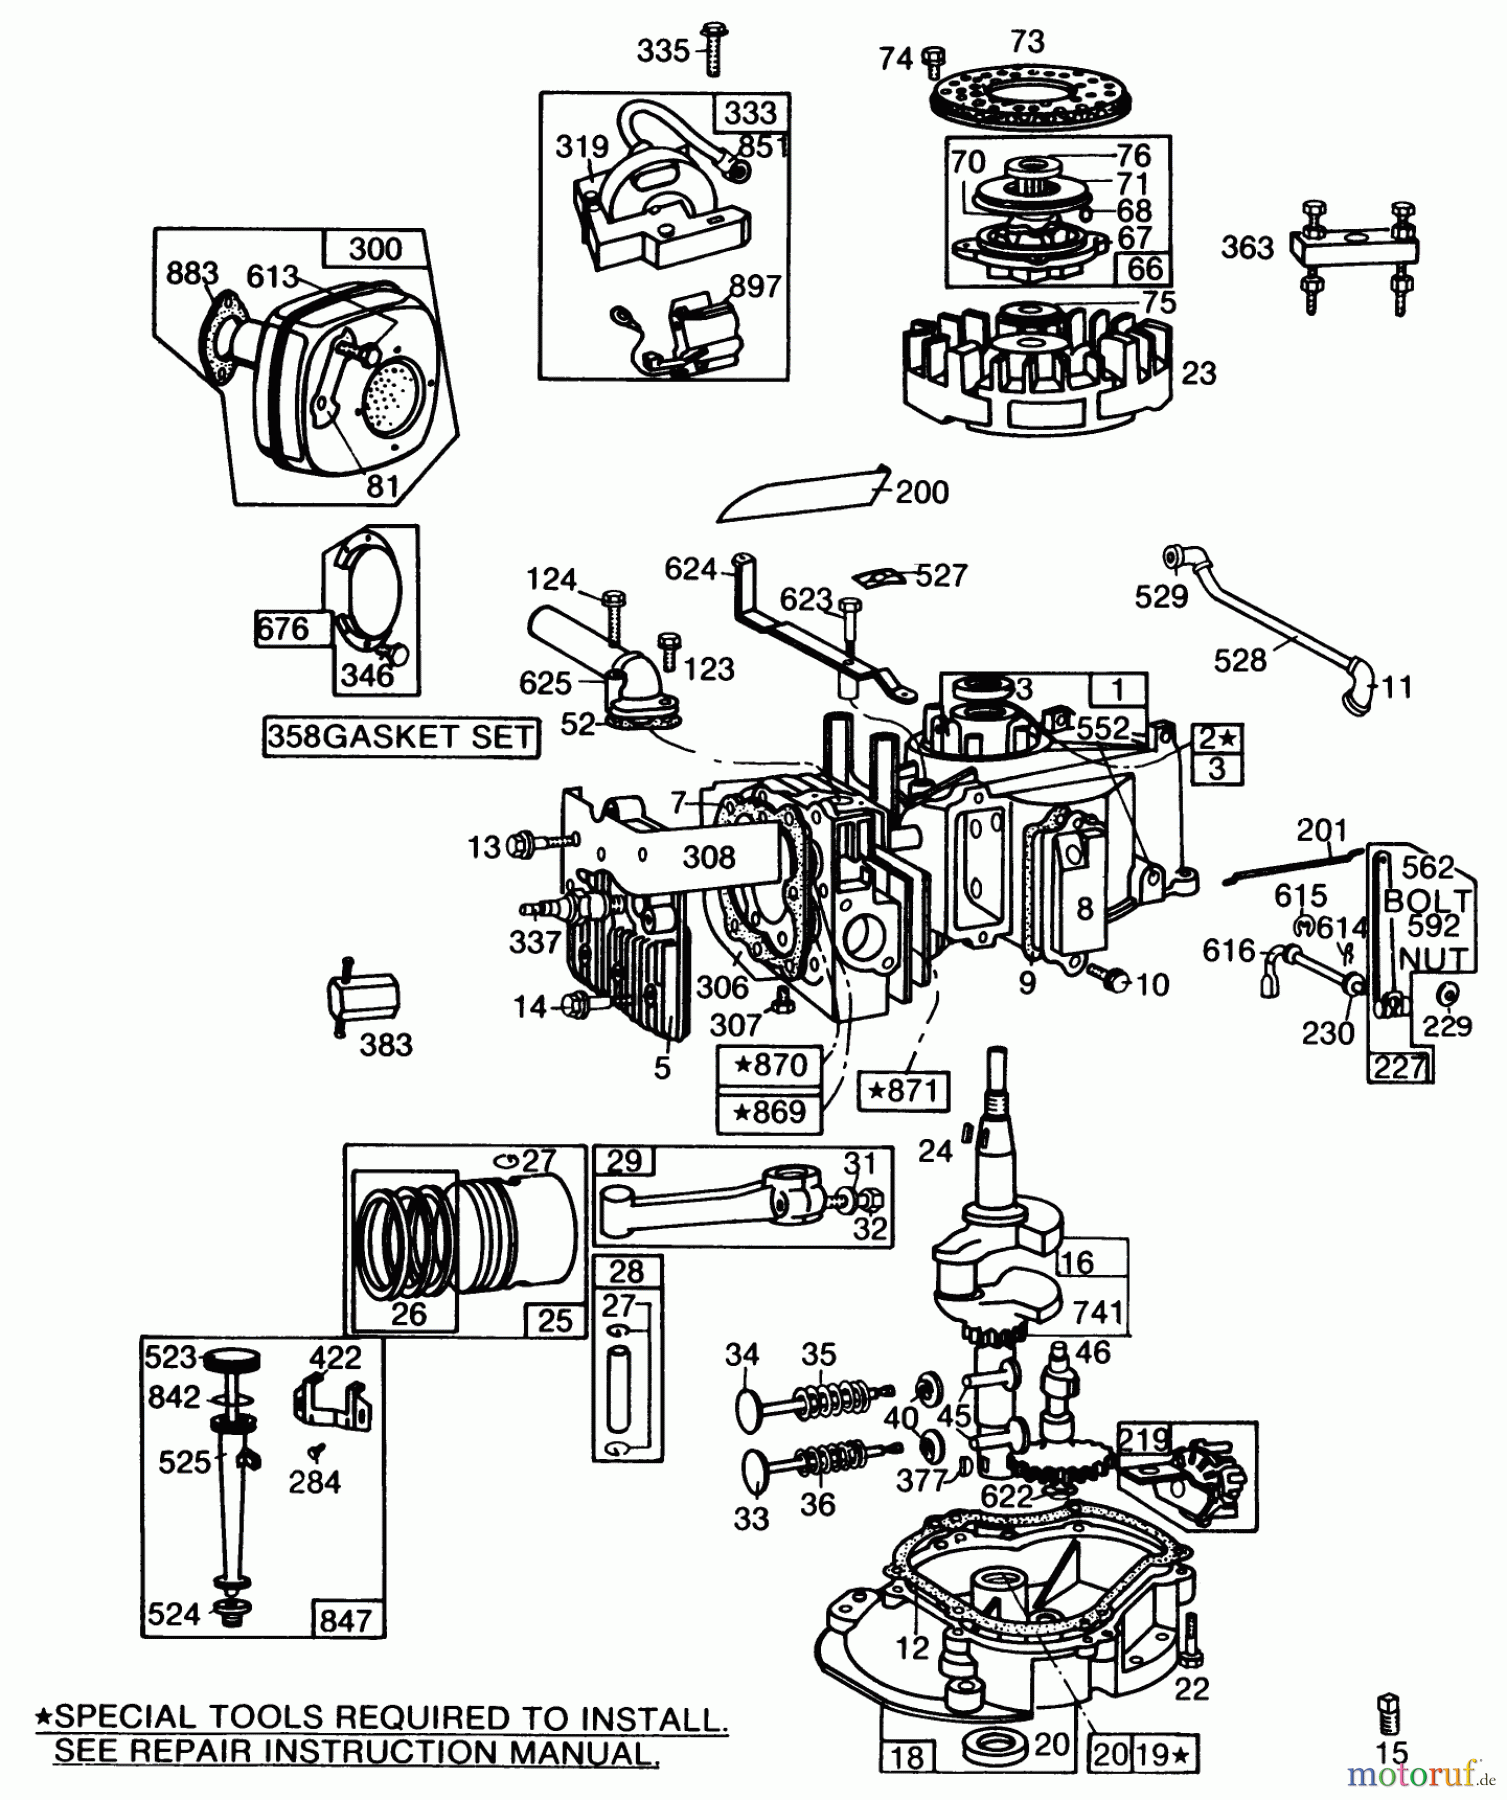  Toro Neu Mowers, Walk-Behind Seite 2 22005 - Toro Lawnmower, 1984 (4000001-4999999) ENGINE BRIGGS & STRATTON MODEL NO. 130902 TYPE 1200-01 #2